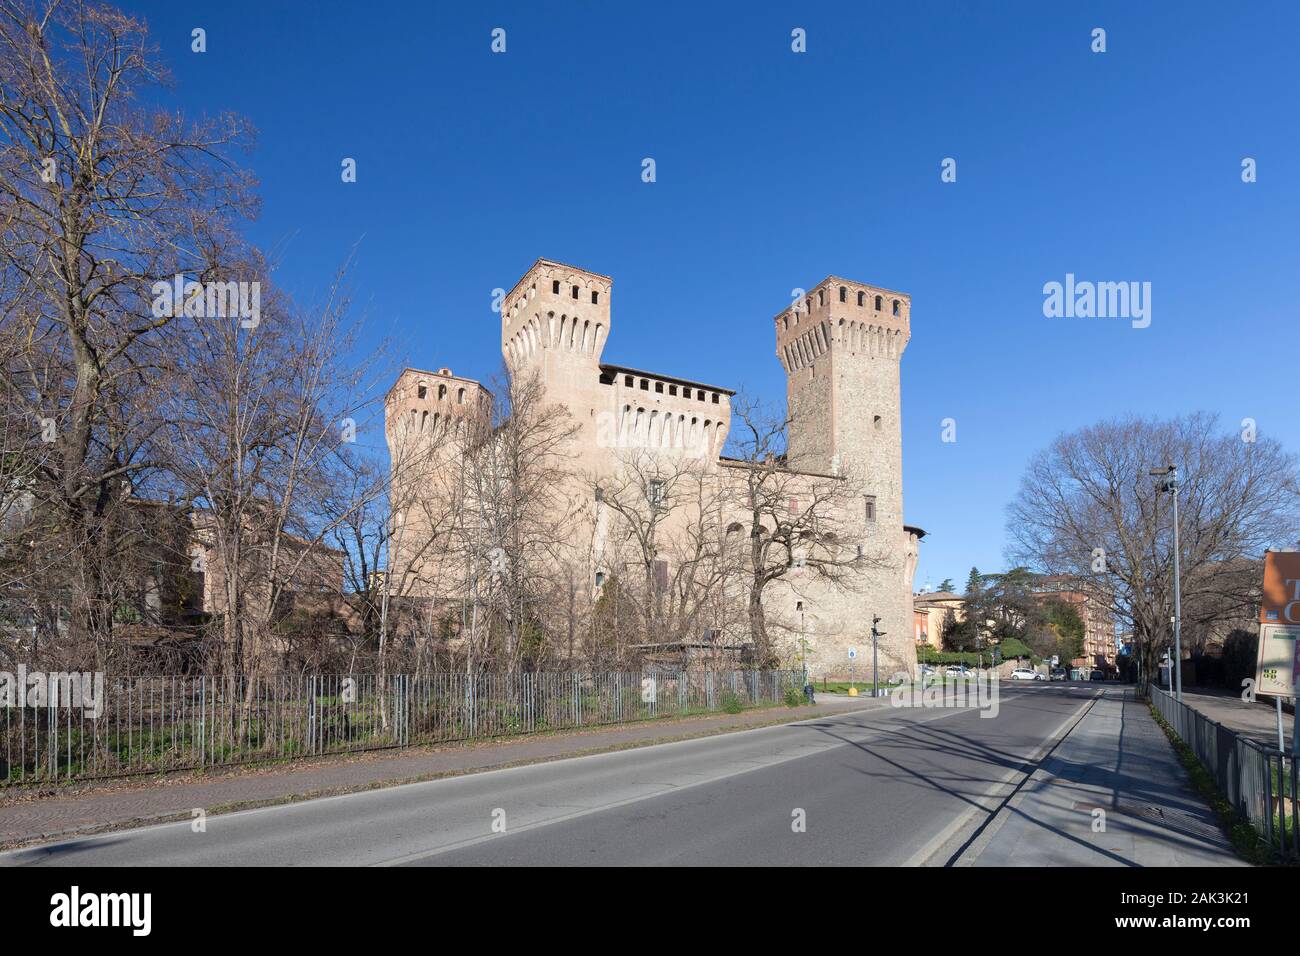 The Vignola castle, Vignola, Italy Stock Photo